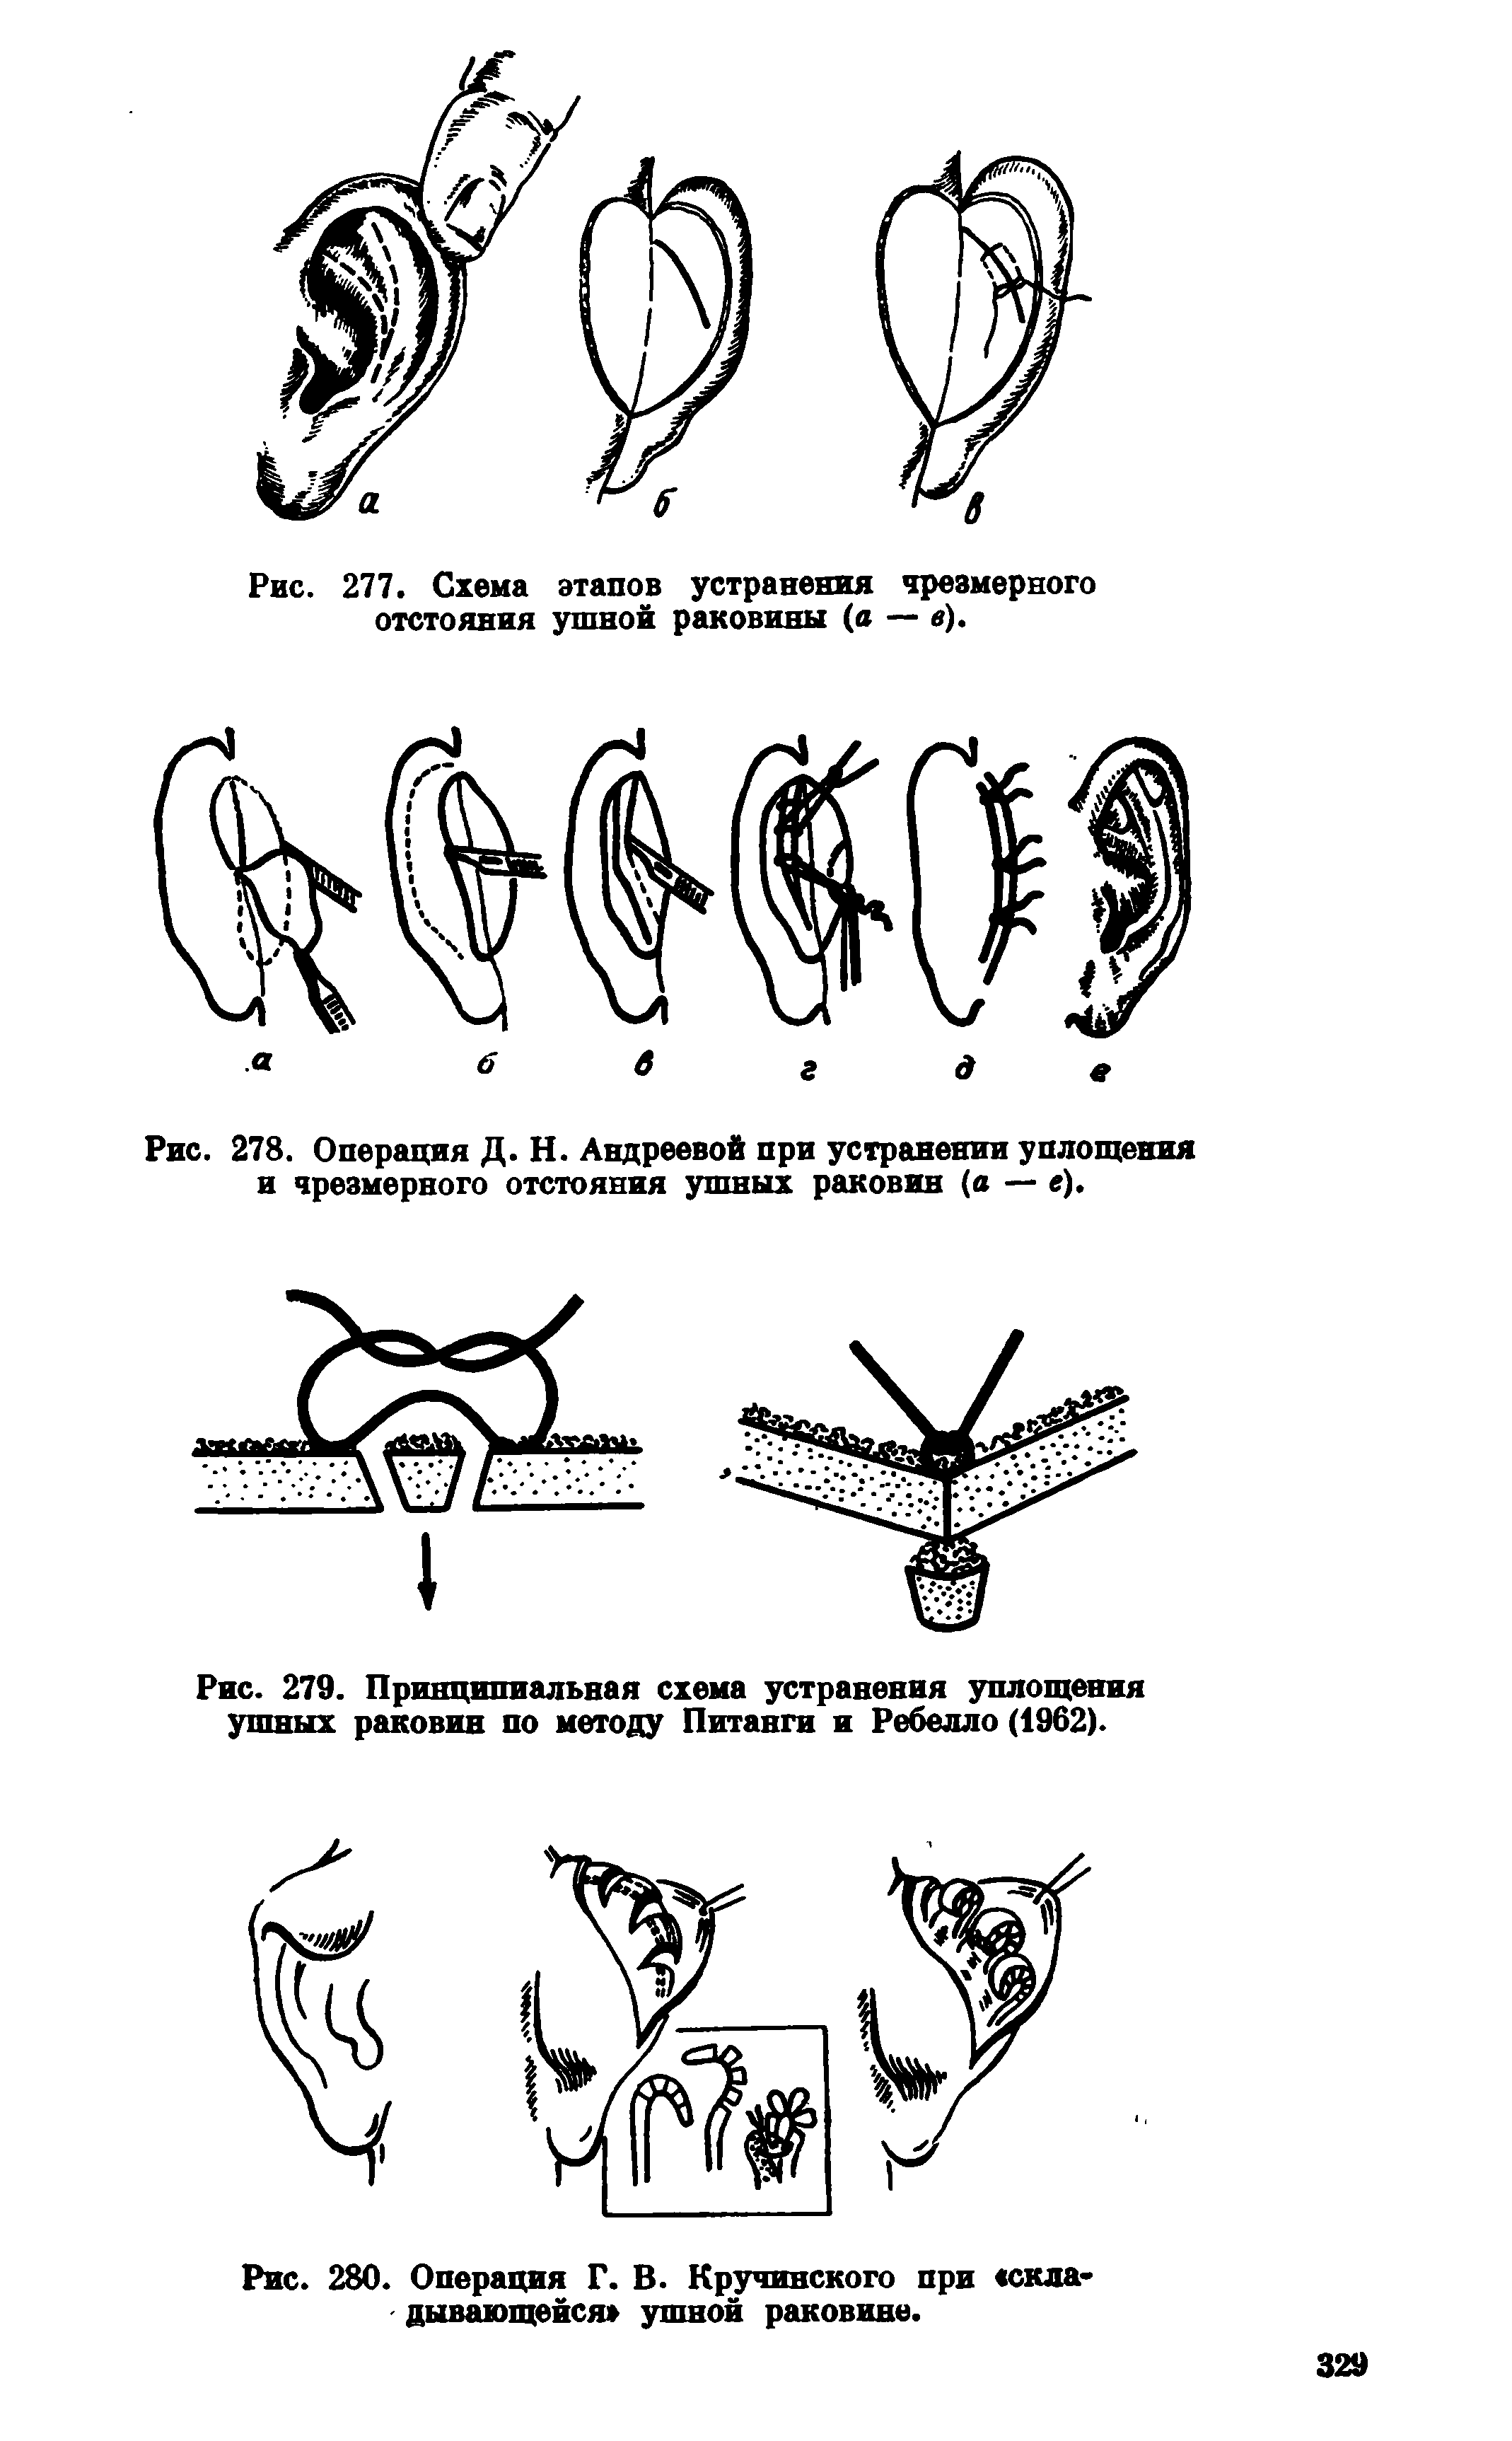 Рис. 279. Принципиальная схема устранения уплощения ушных раковин по методу Питанги и Ребелло (1962).